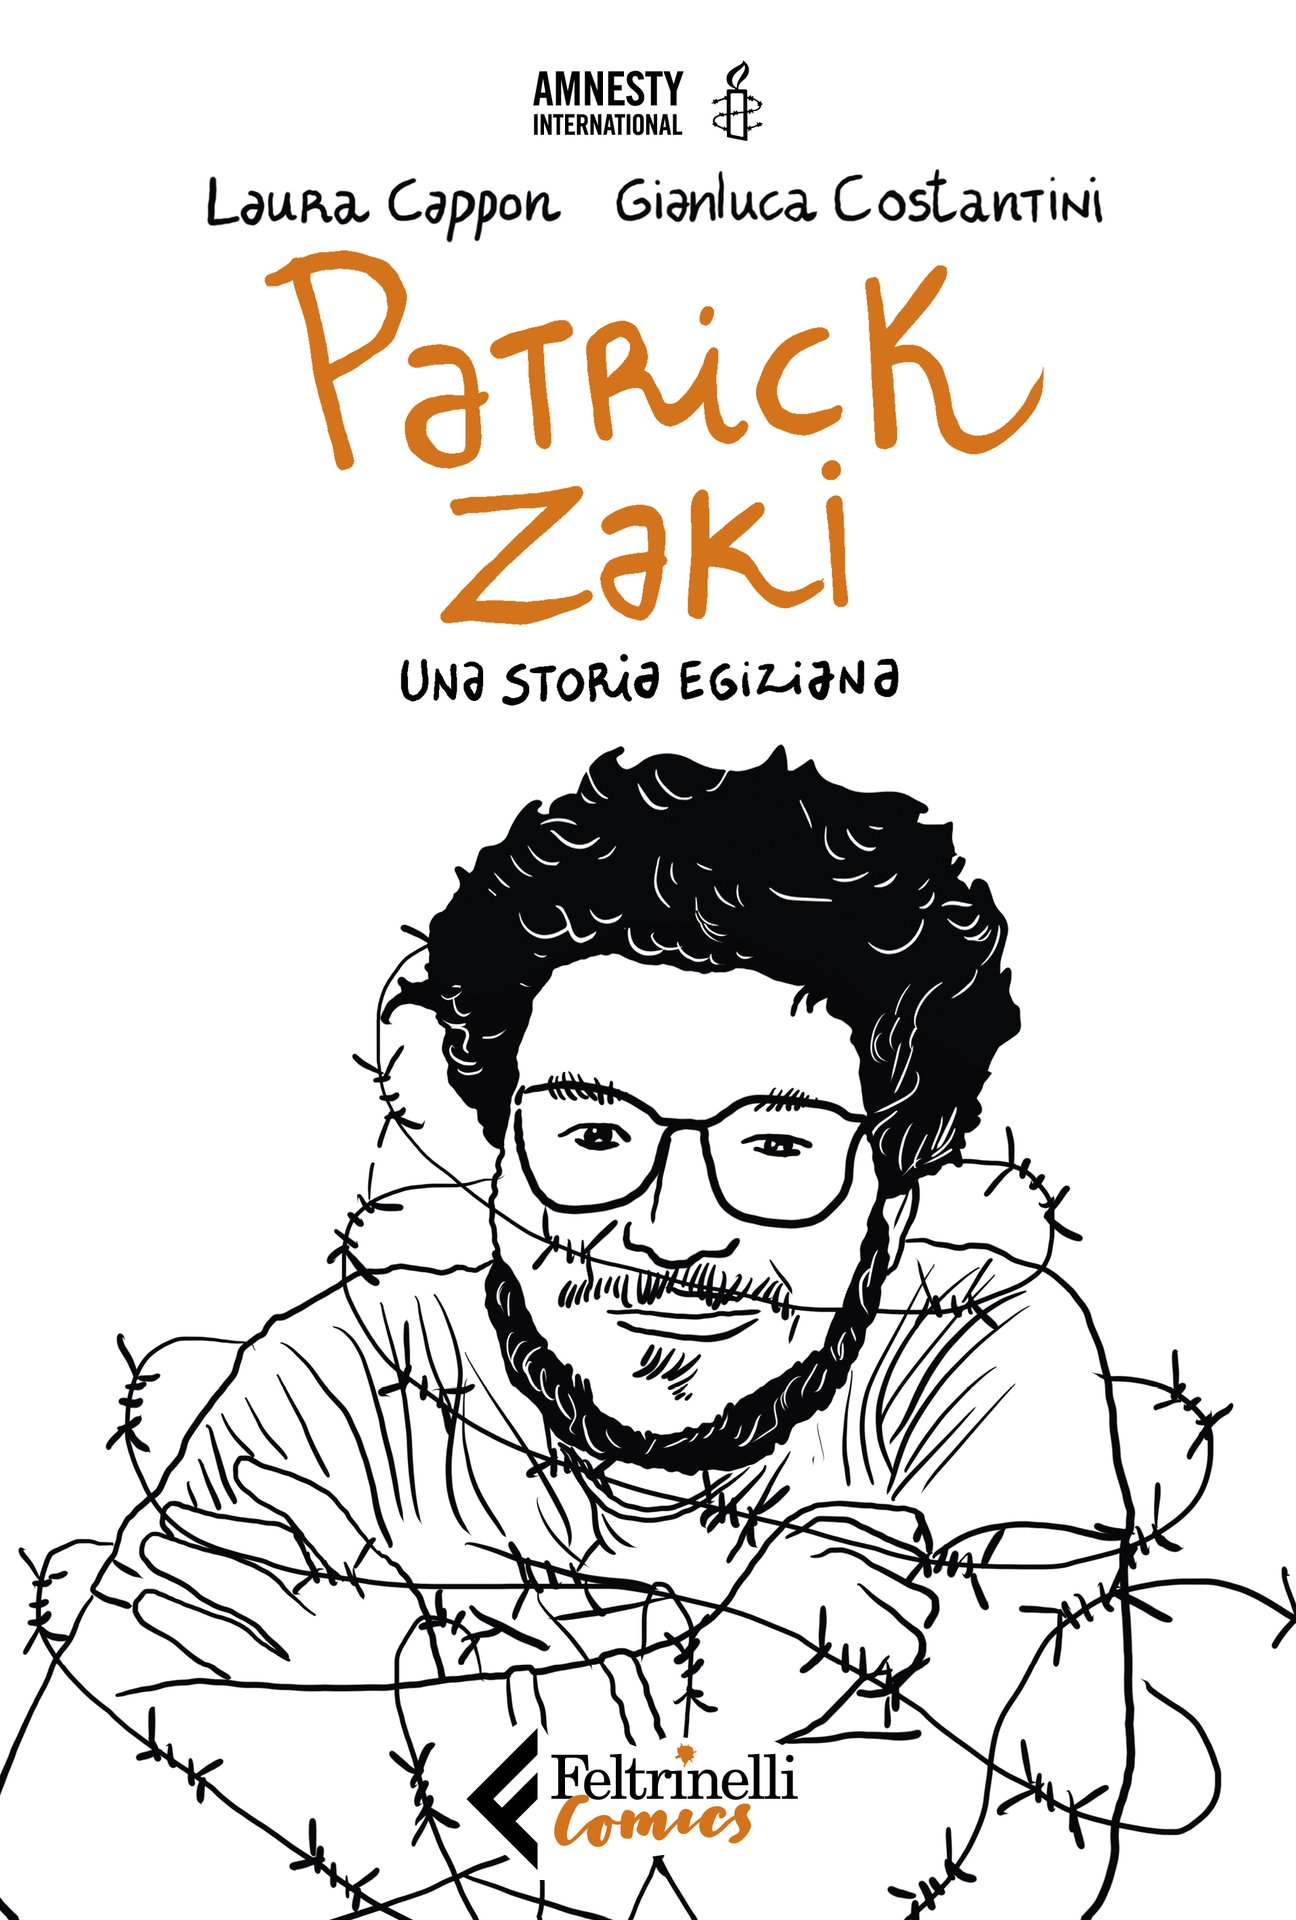 Patrick Zaki, processo rinviato